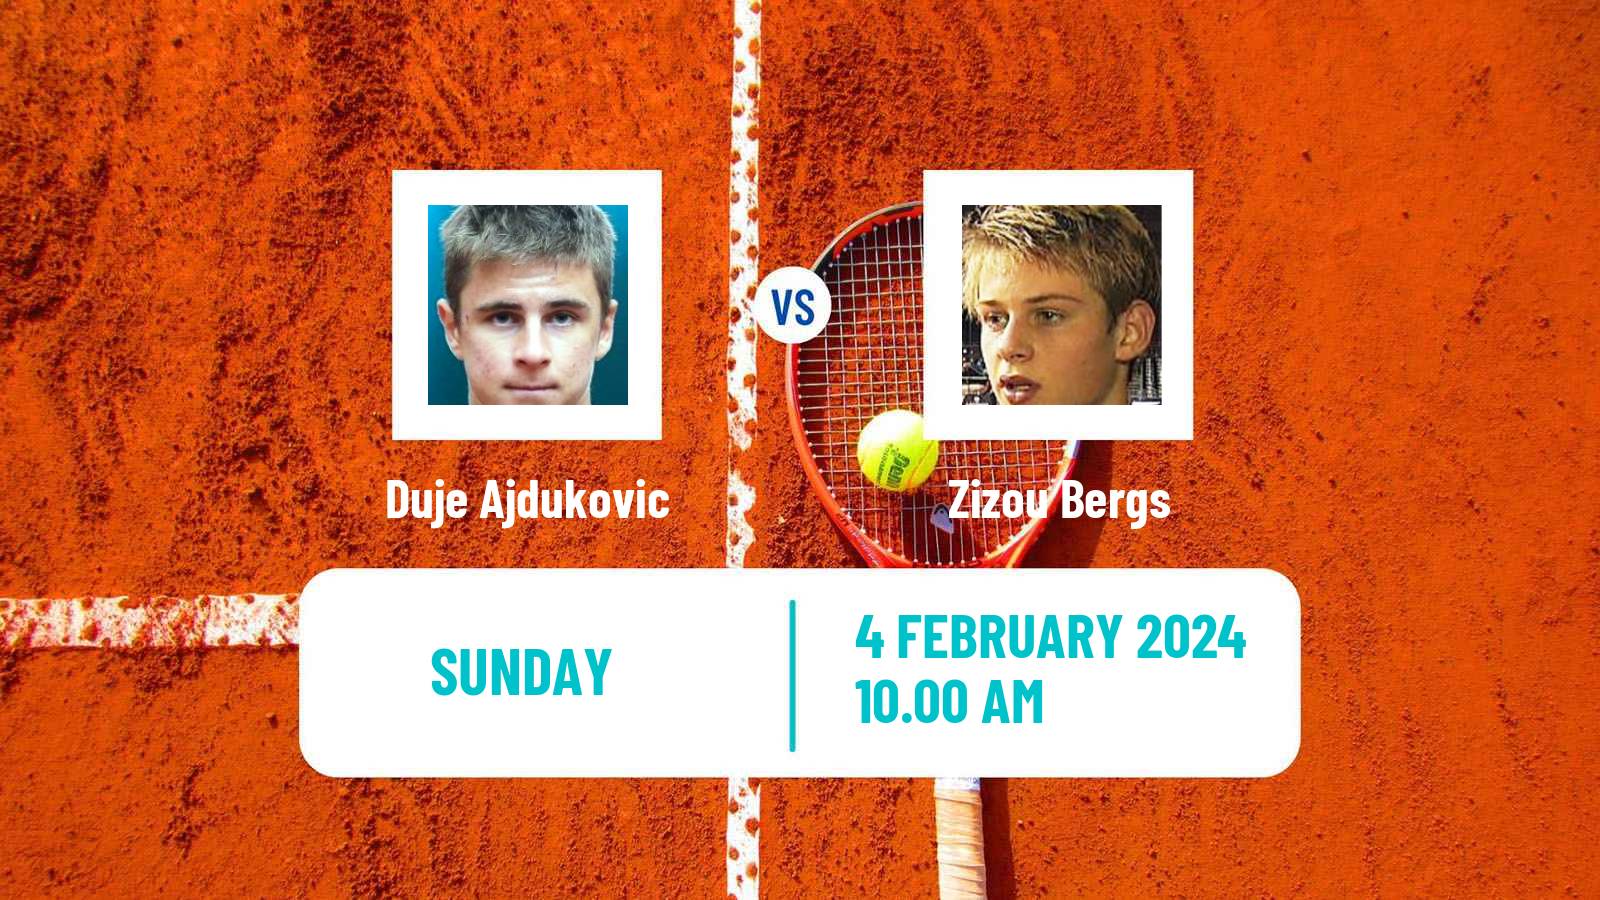 Tennis Davis Cup World Group Duje Ajdukovic - Zizou Bergs